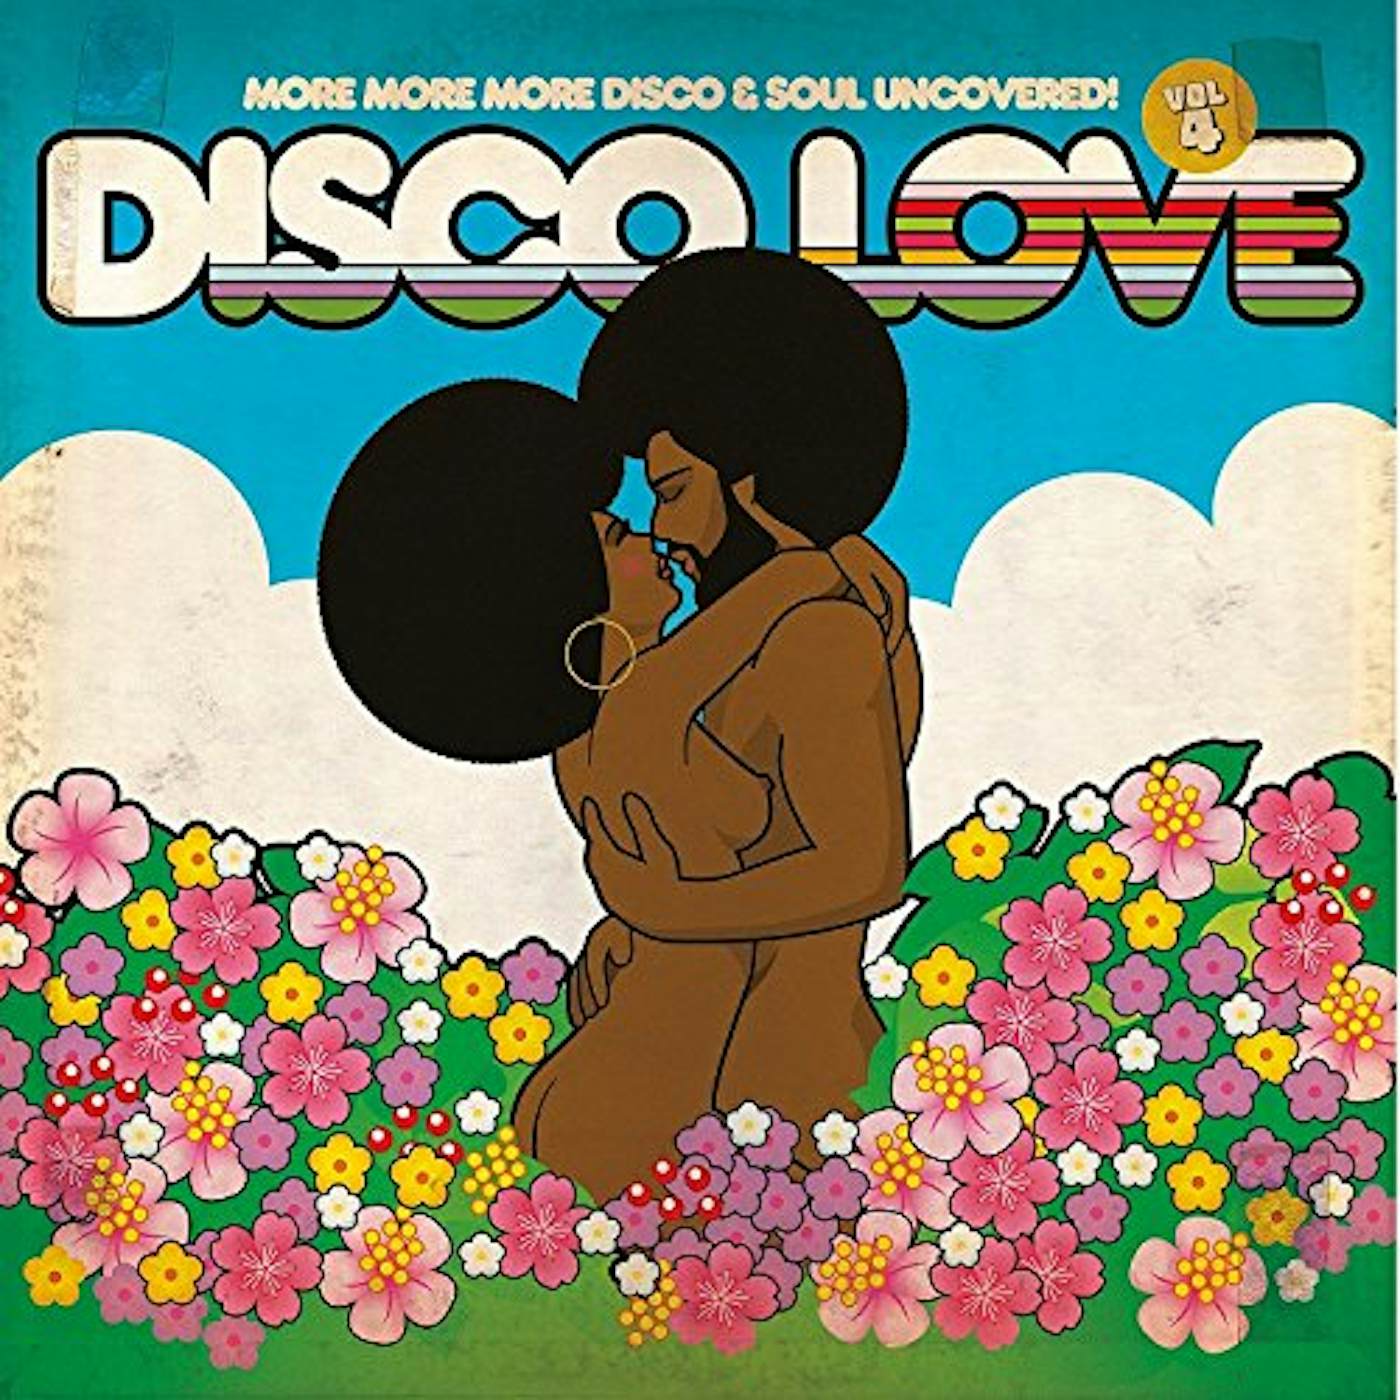 DISCO LOVE 4 MORE MORE MORE DISCO & SOUL UNCOVERED Vinyl Record